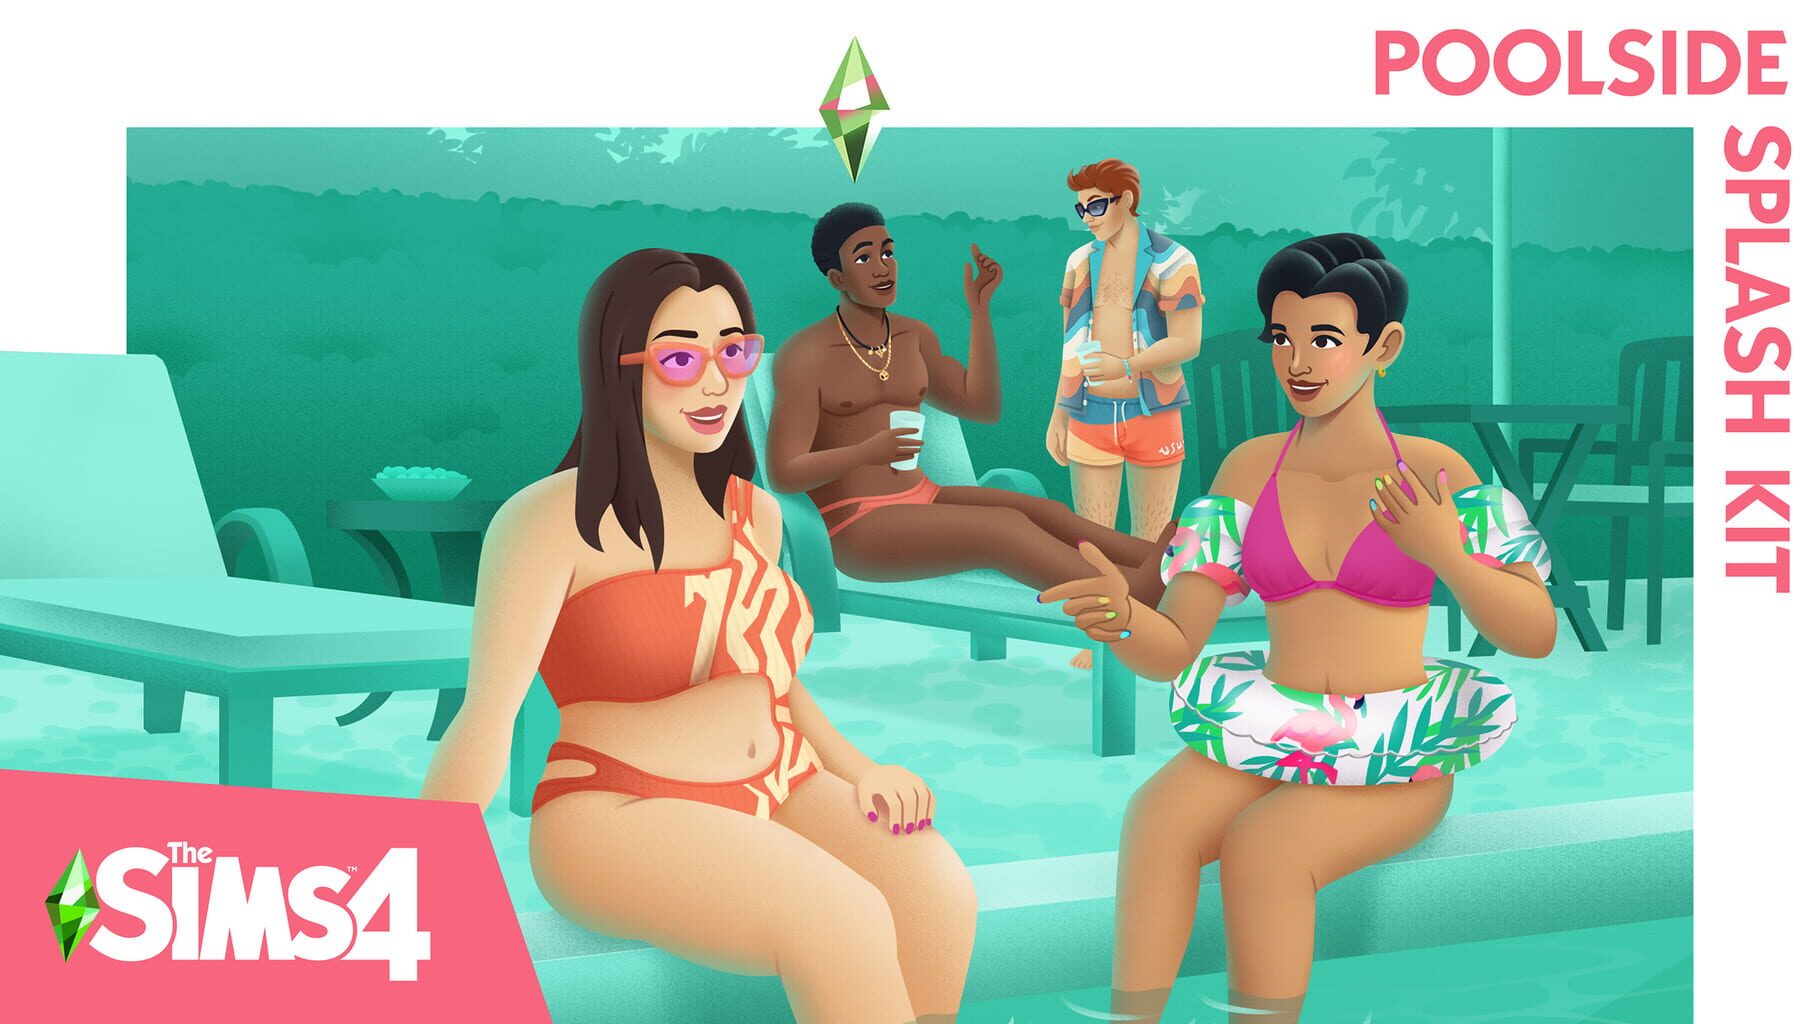 Arte - The Sims 4: Poolside Splash Kit